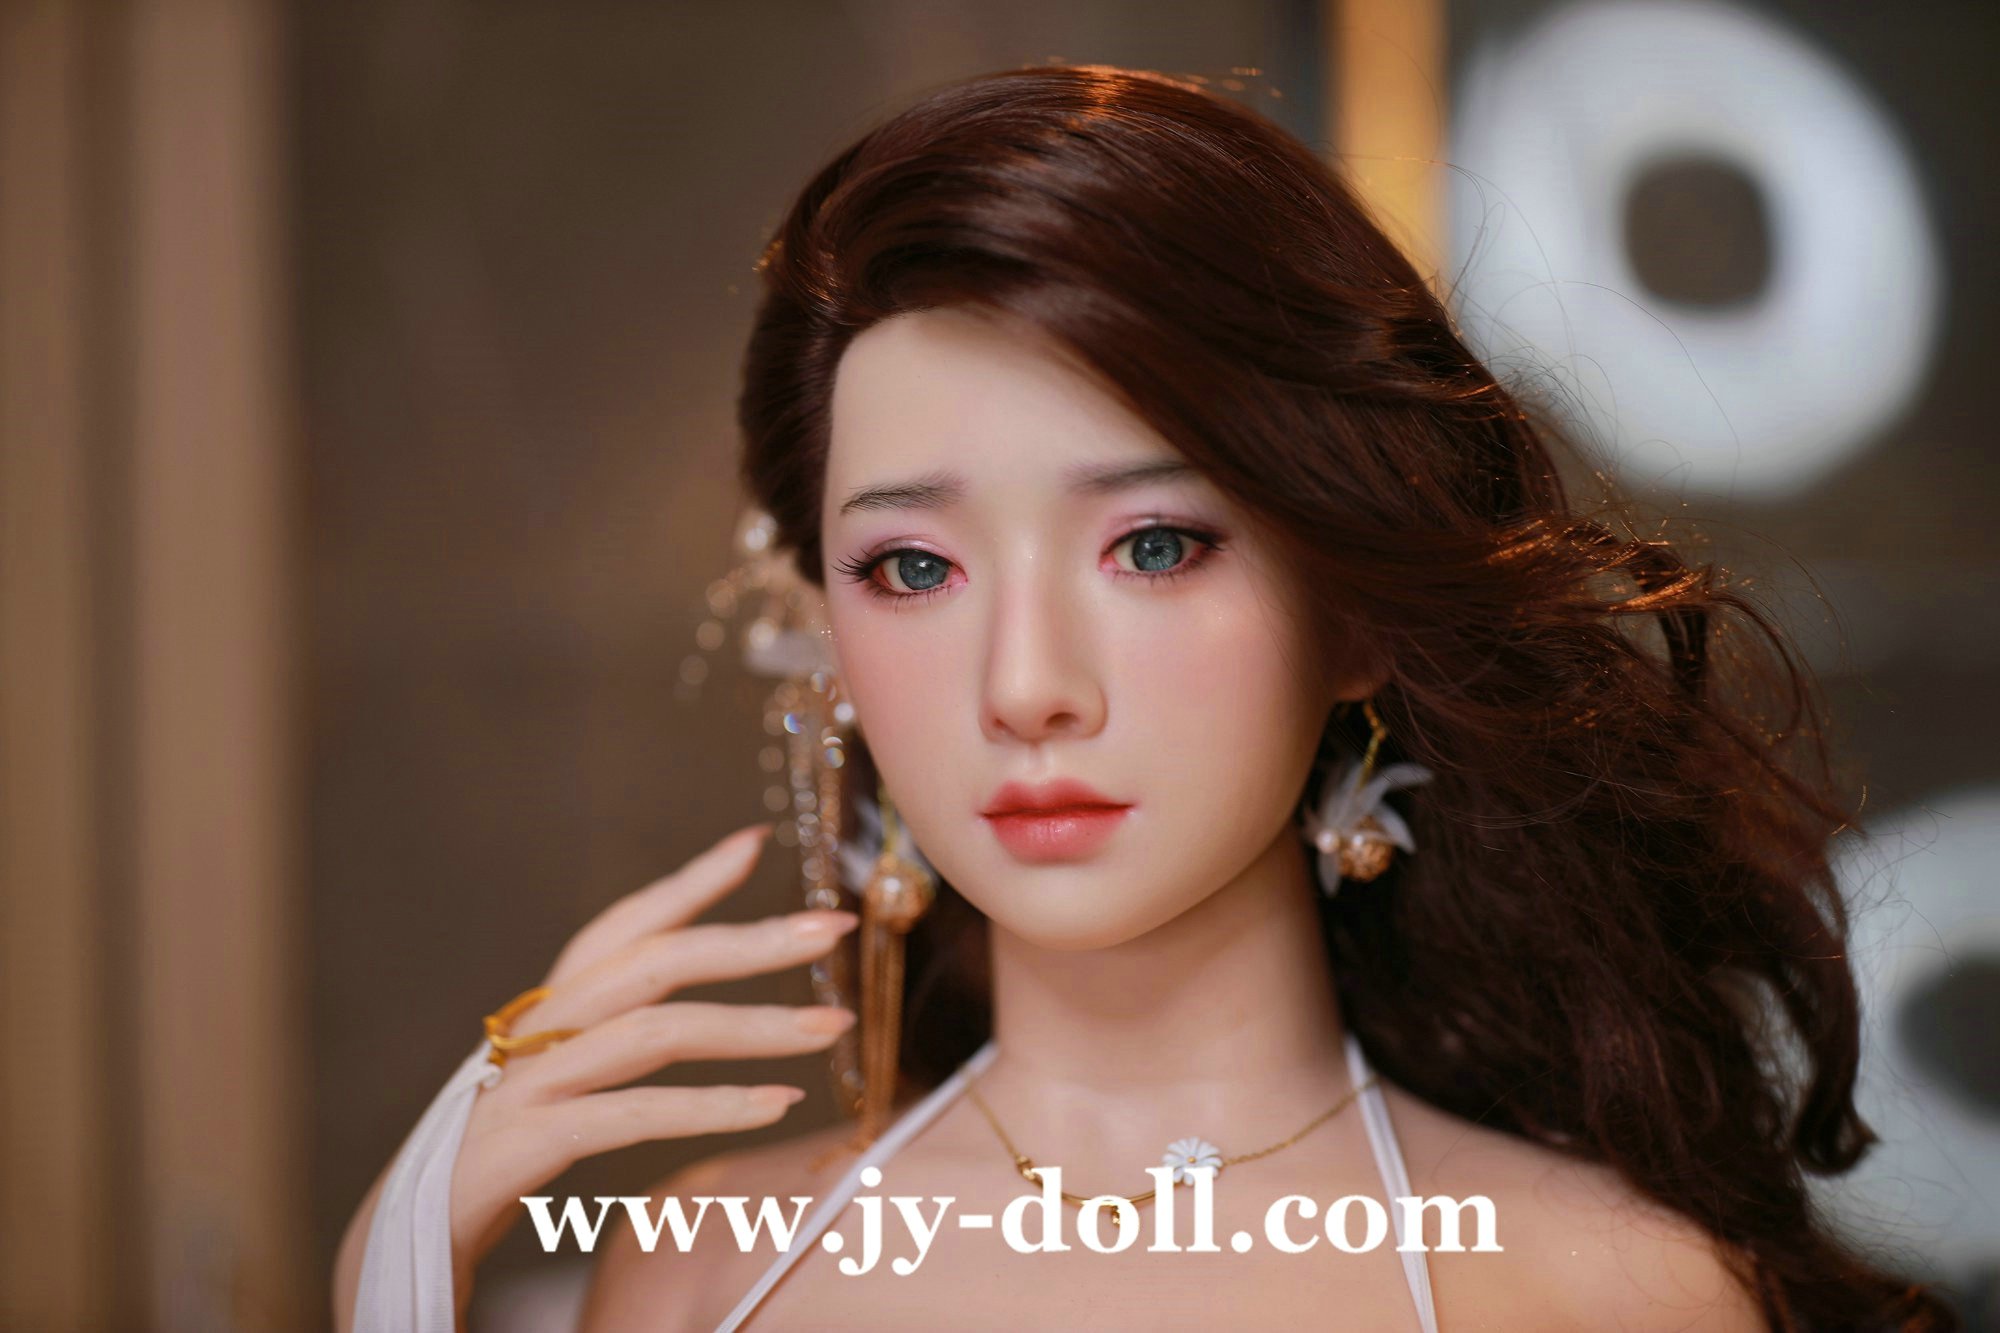 JY Doll 163cm full silicone doll Meiyu